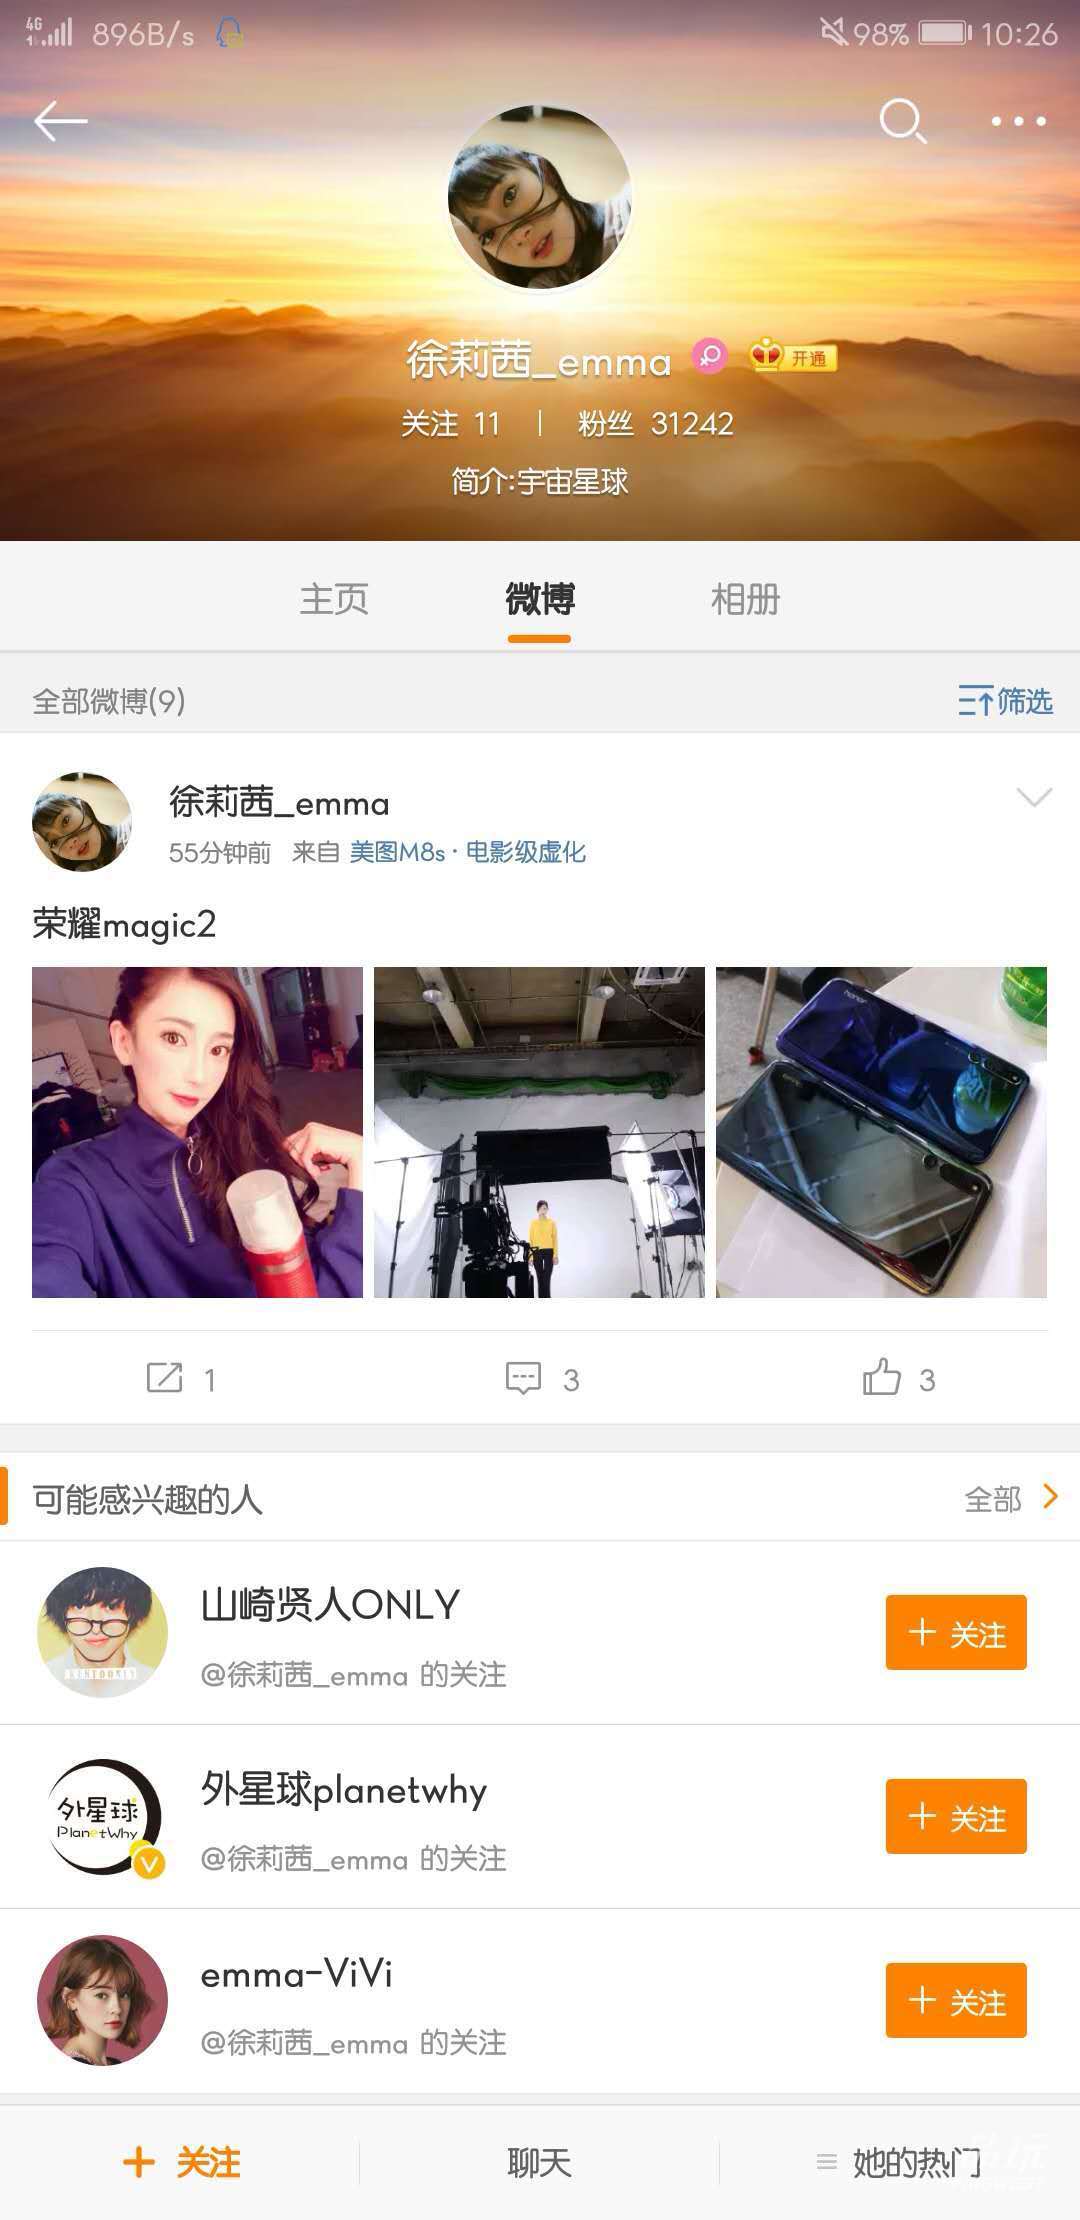 赵丽颖婚后首发微博，意外曝光荣耀Magic2后置三摄